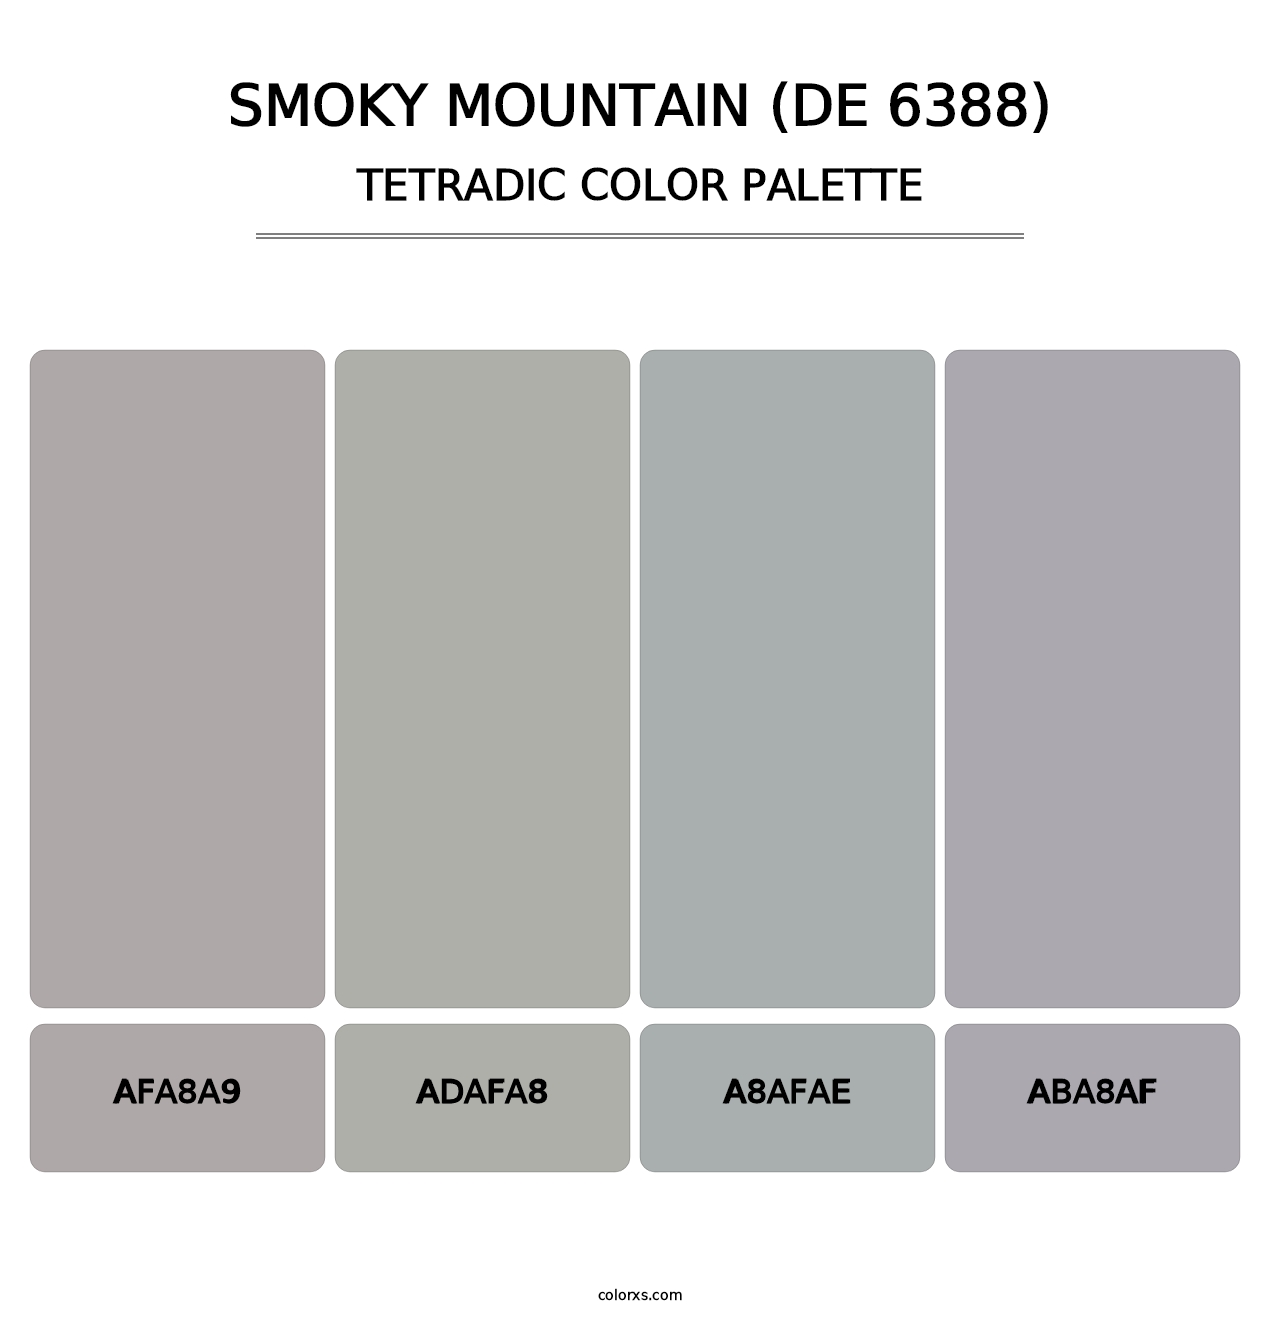 Smoky Mountain (DE 6388) - Tetradic Color Palette